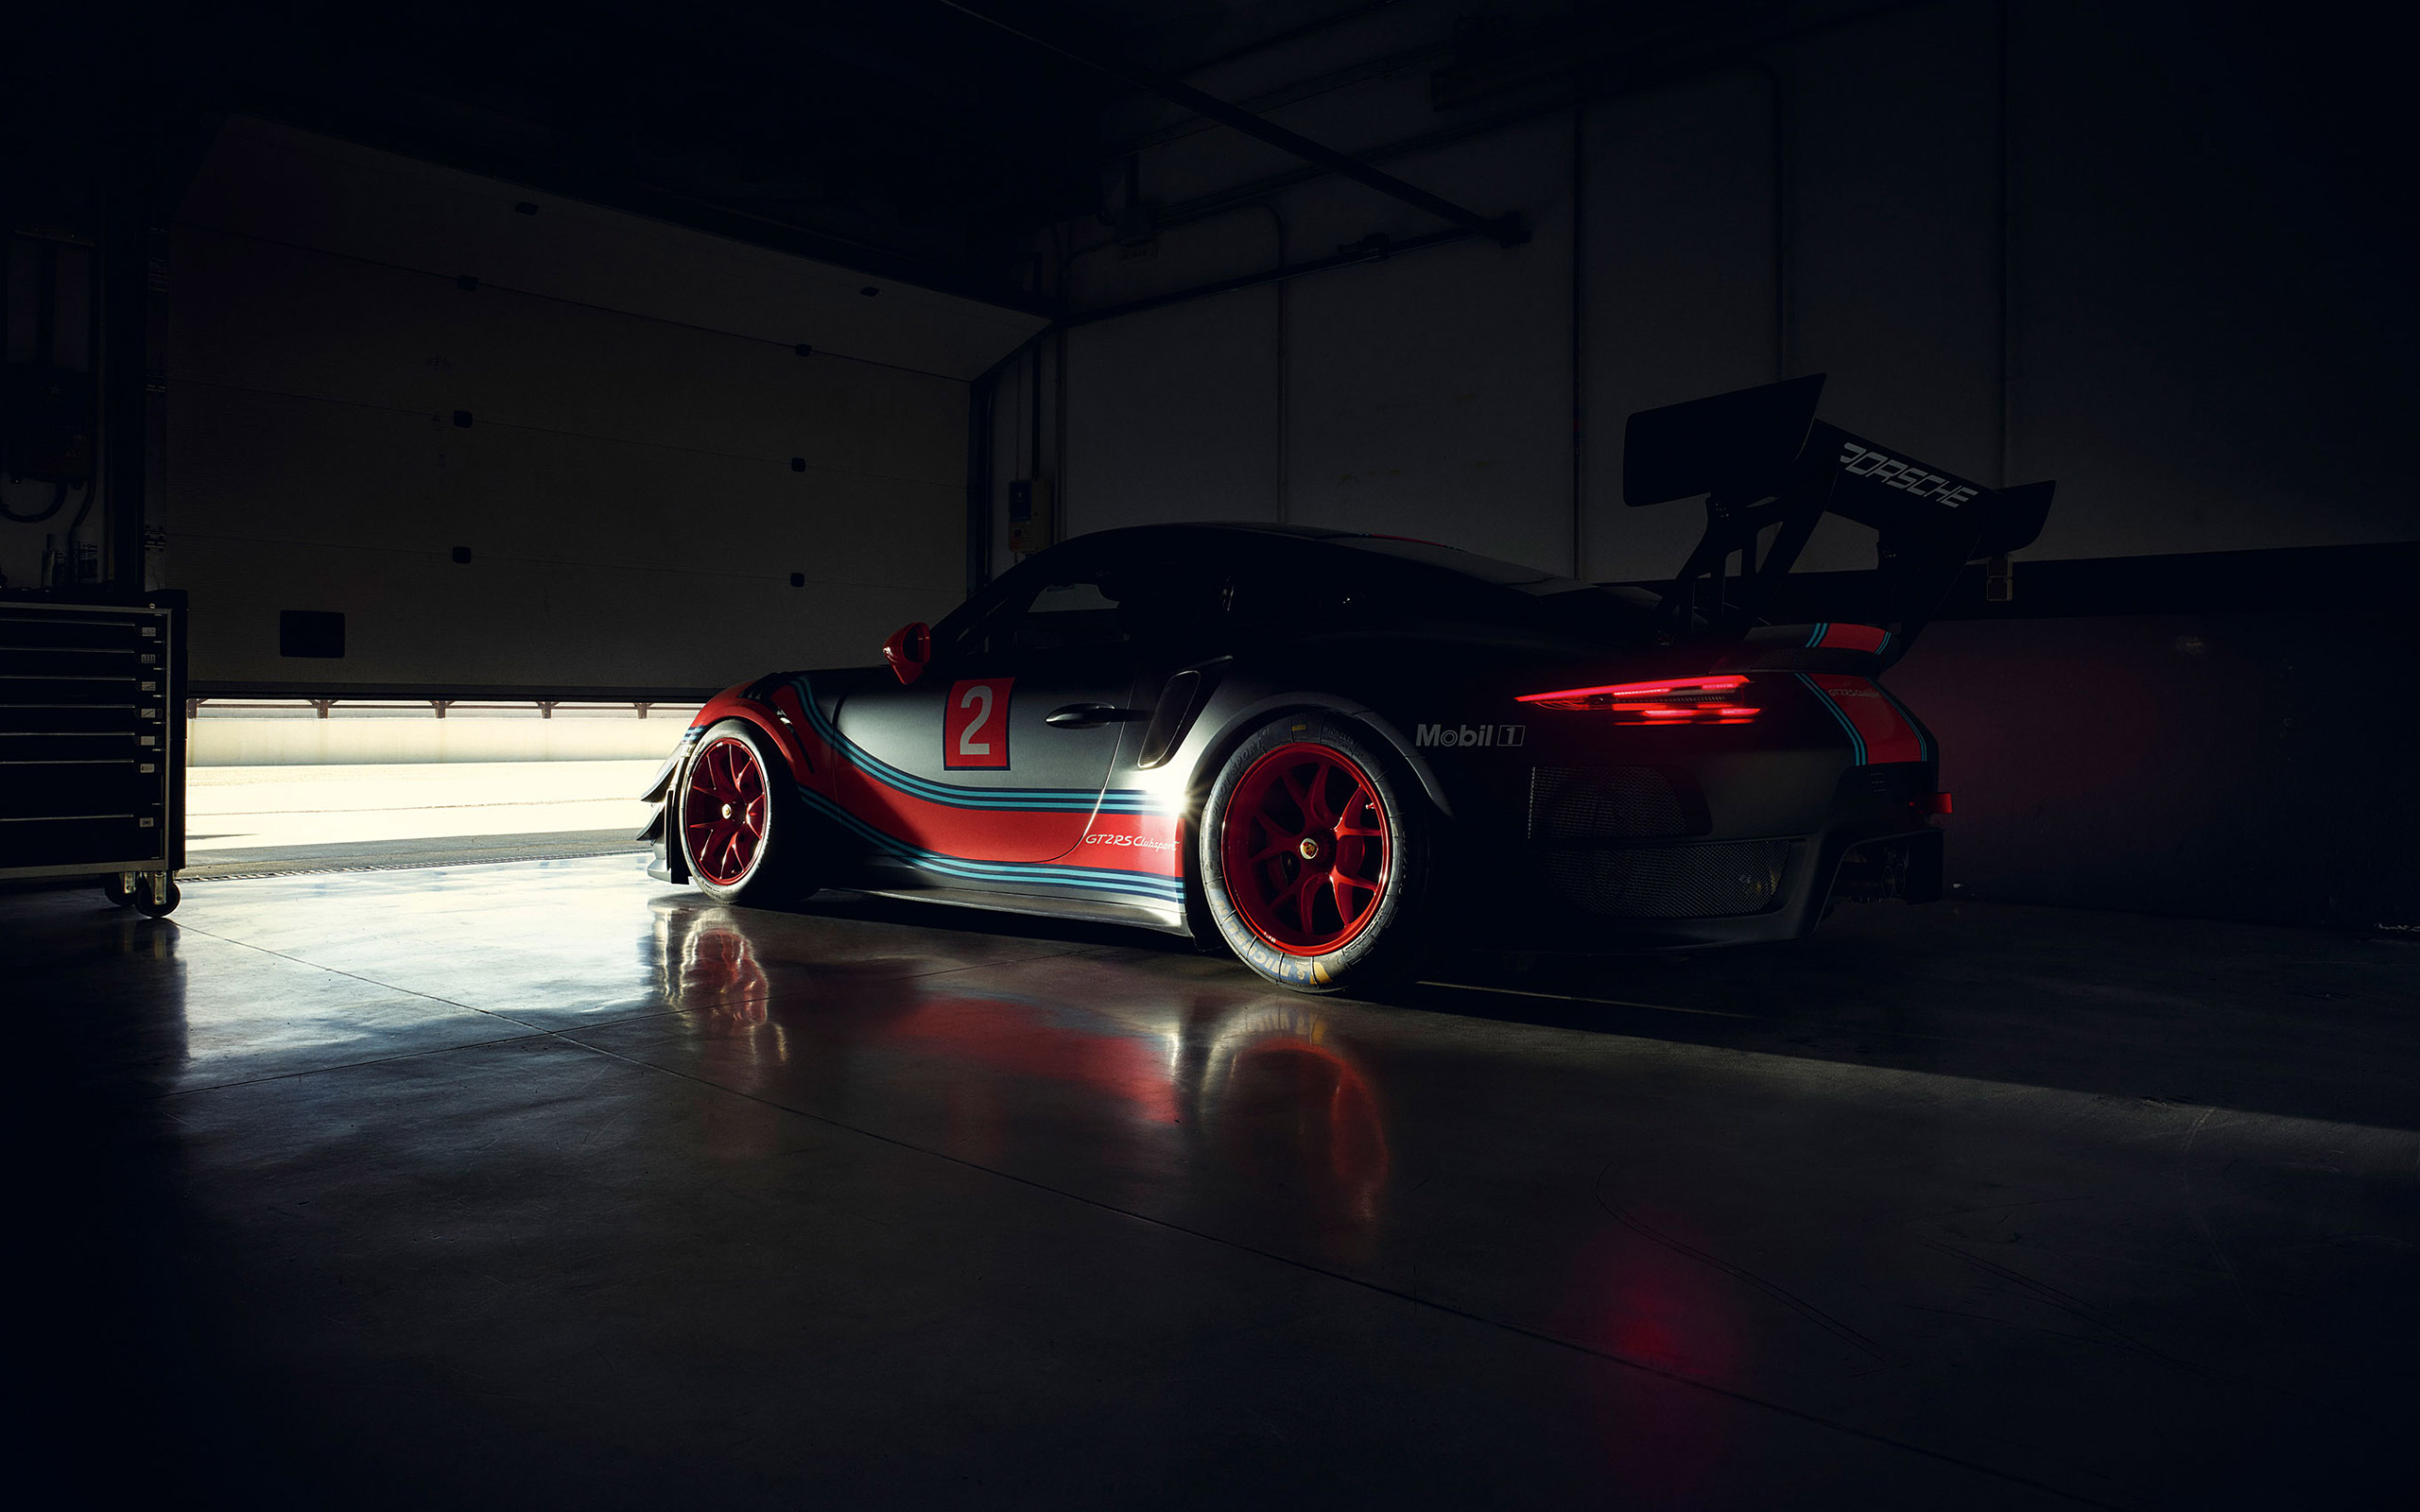  2019 Porsche 911 GT2 RS Clubsport Wallpaper.